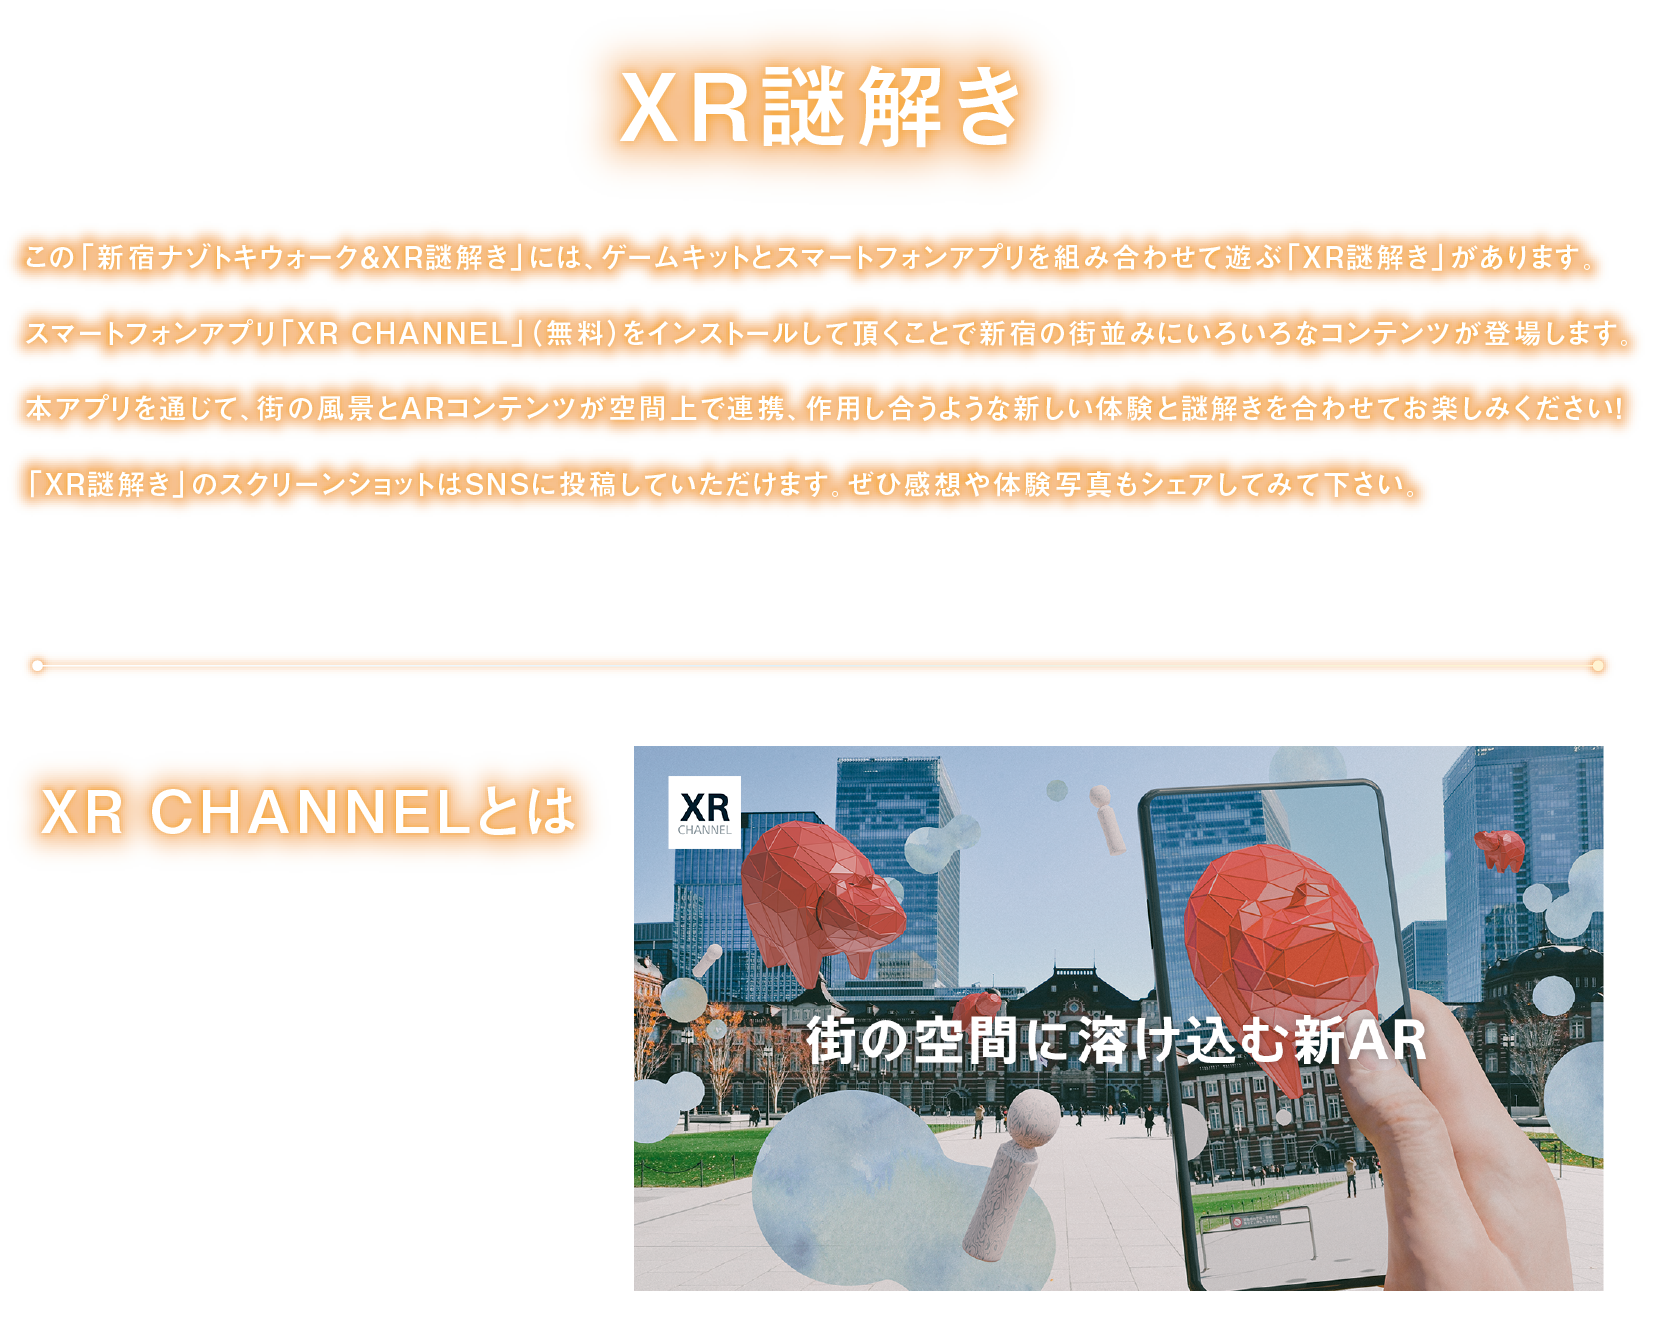 解开XR谜
"解开新宿谜朱鹭行走&XR谜，"组合niha，游戏配套元件和智能手机应用软件，玩"解开XR谜，"是gaarimasu。
因为安装智能手机应用软件"XR CHANNEL"所以AR内容和市镇的风景在空间上合作，请一共享受起作用的新的经验和谜一样的解kio